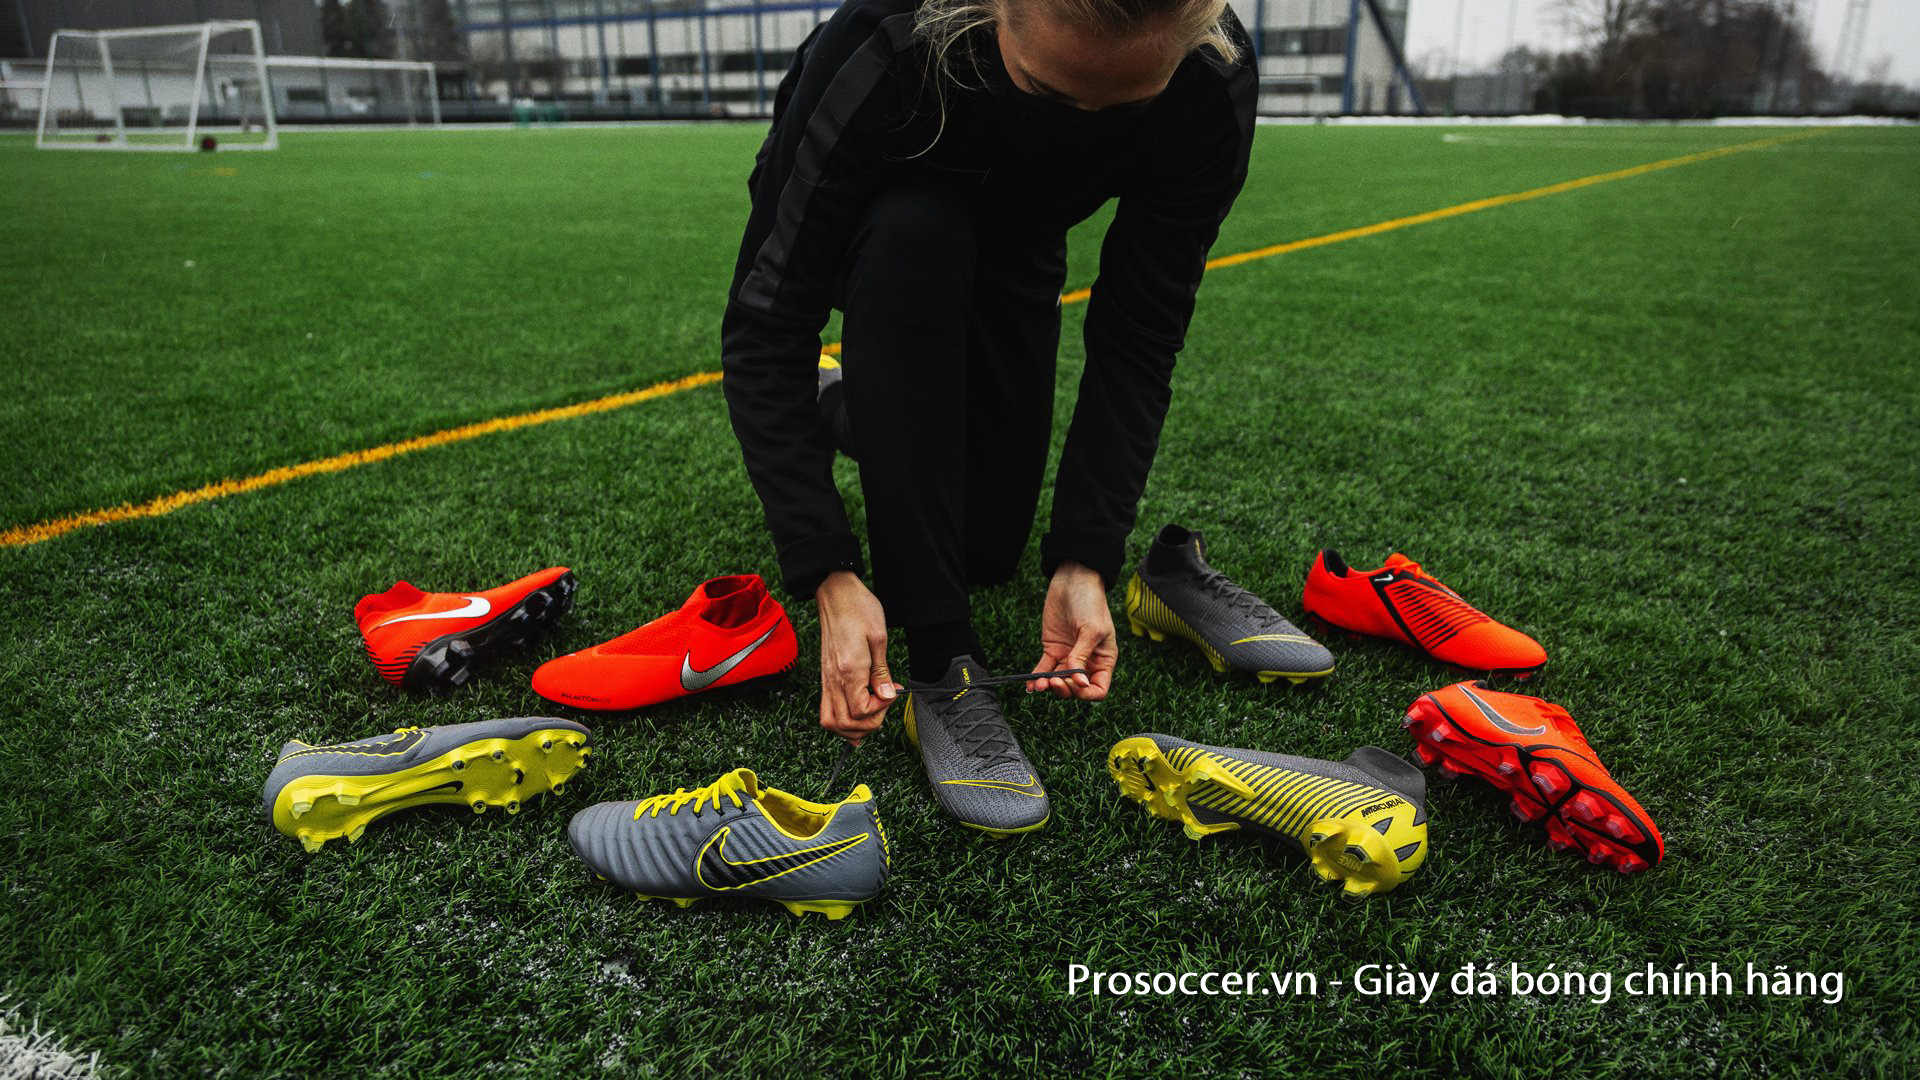 Các mẫu giày đá bóng của cầu thủ chuyên nghiệp thường được làm bằng chất liệu cao cấp